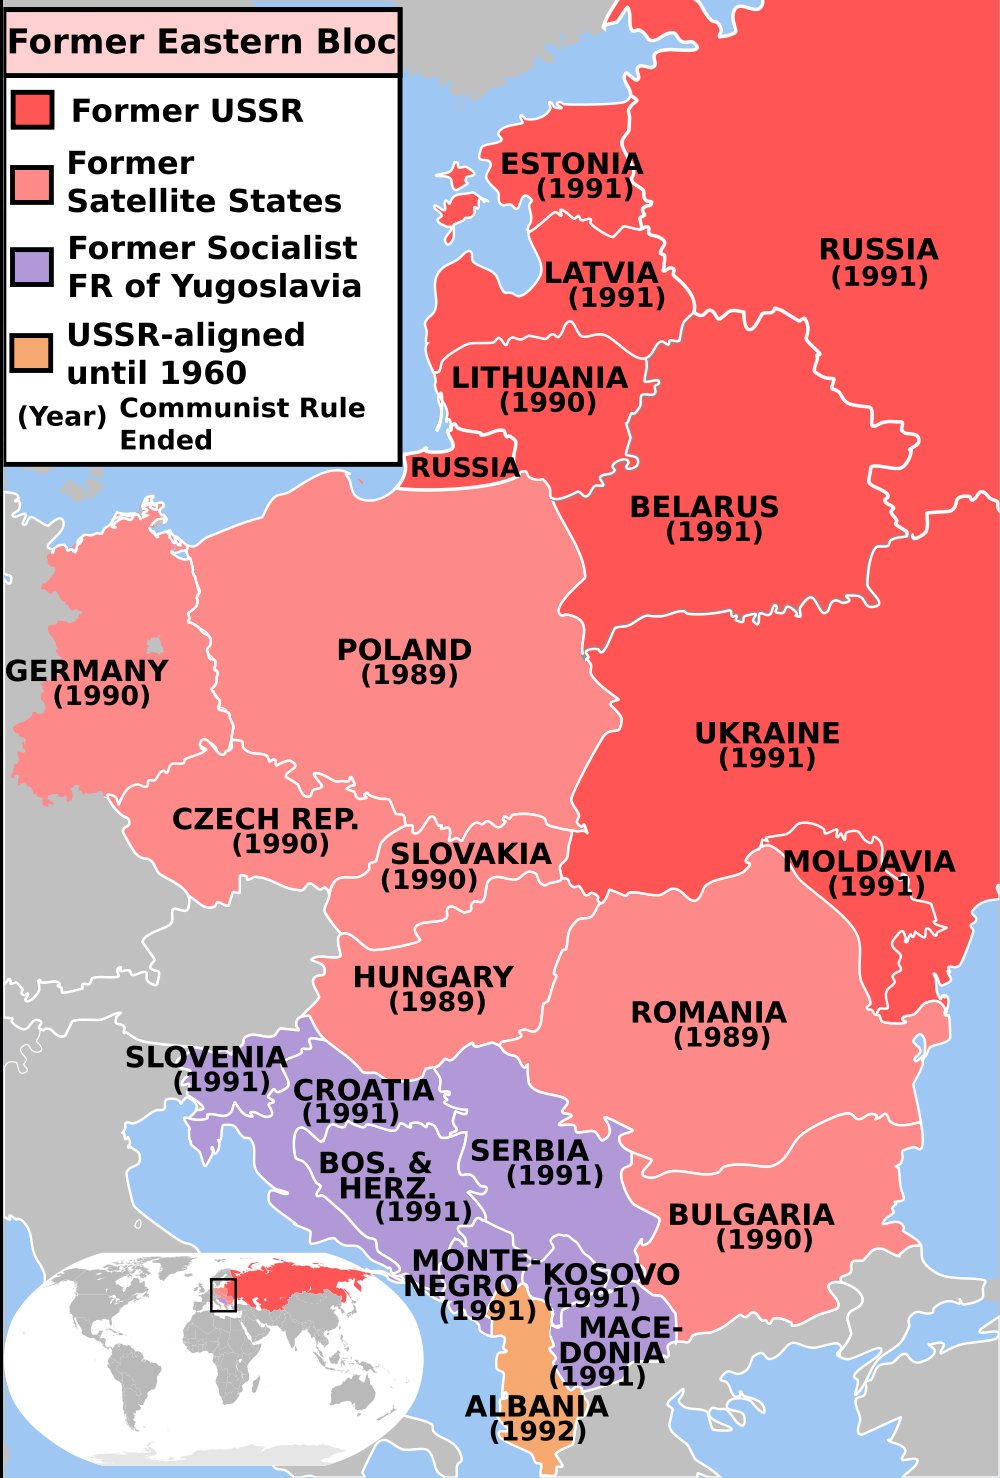 mappa-di-europa-e-russia-mappa-europa-russia-europa-dell-est-europa